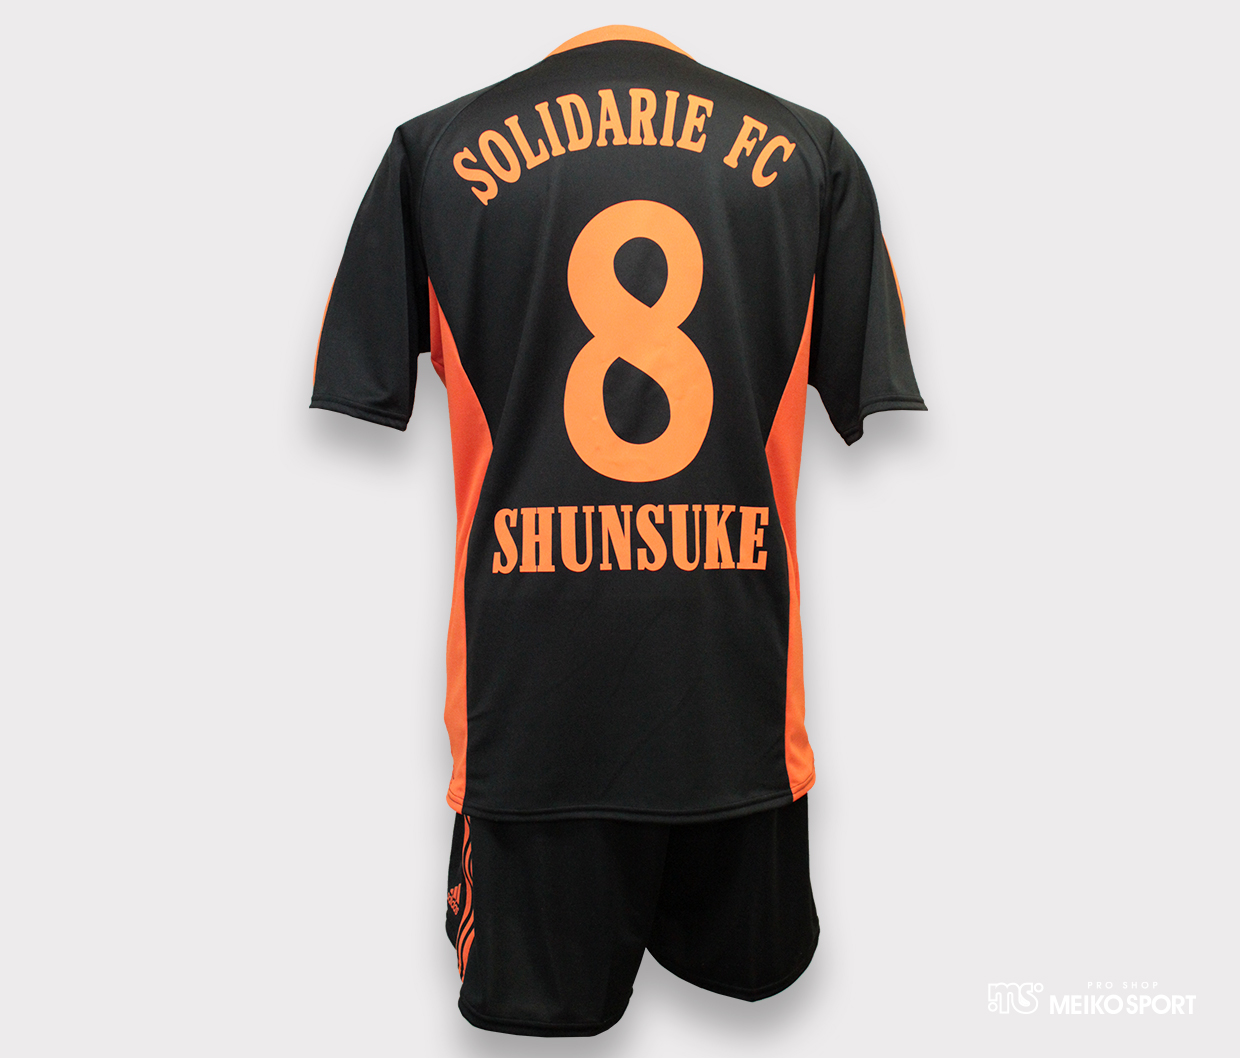 SOLIDARIE FC